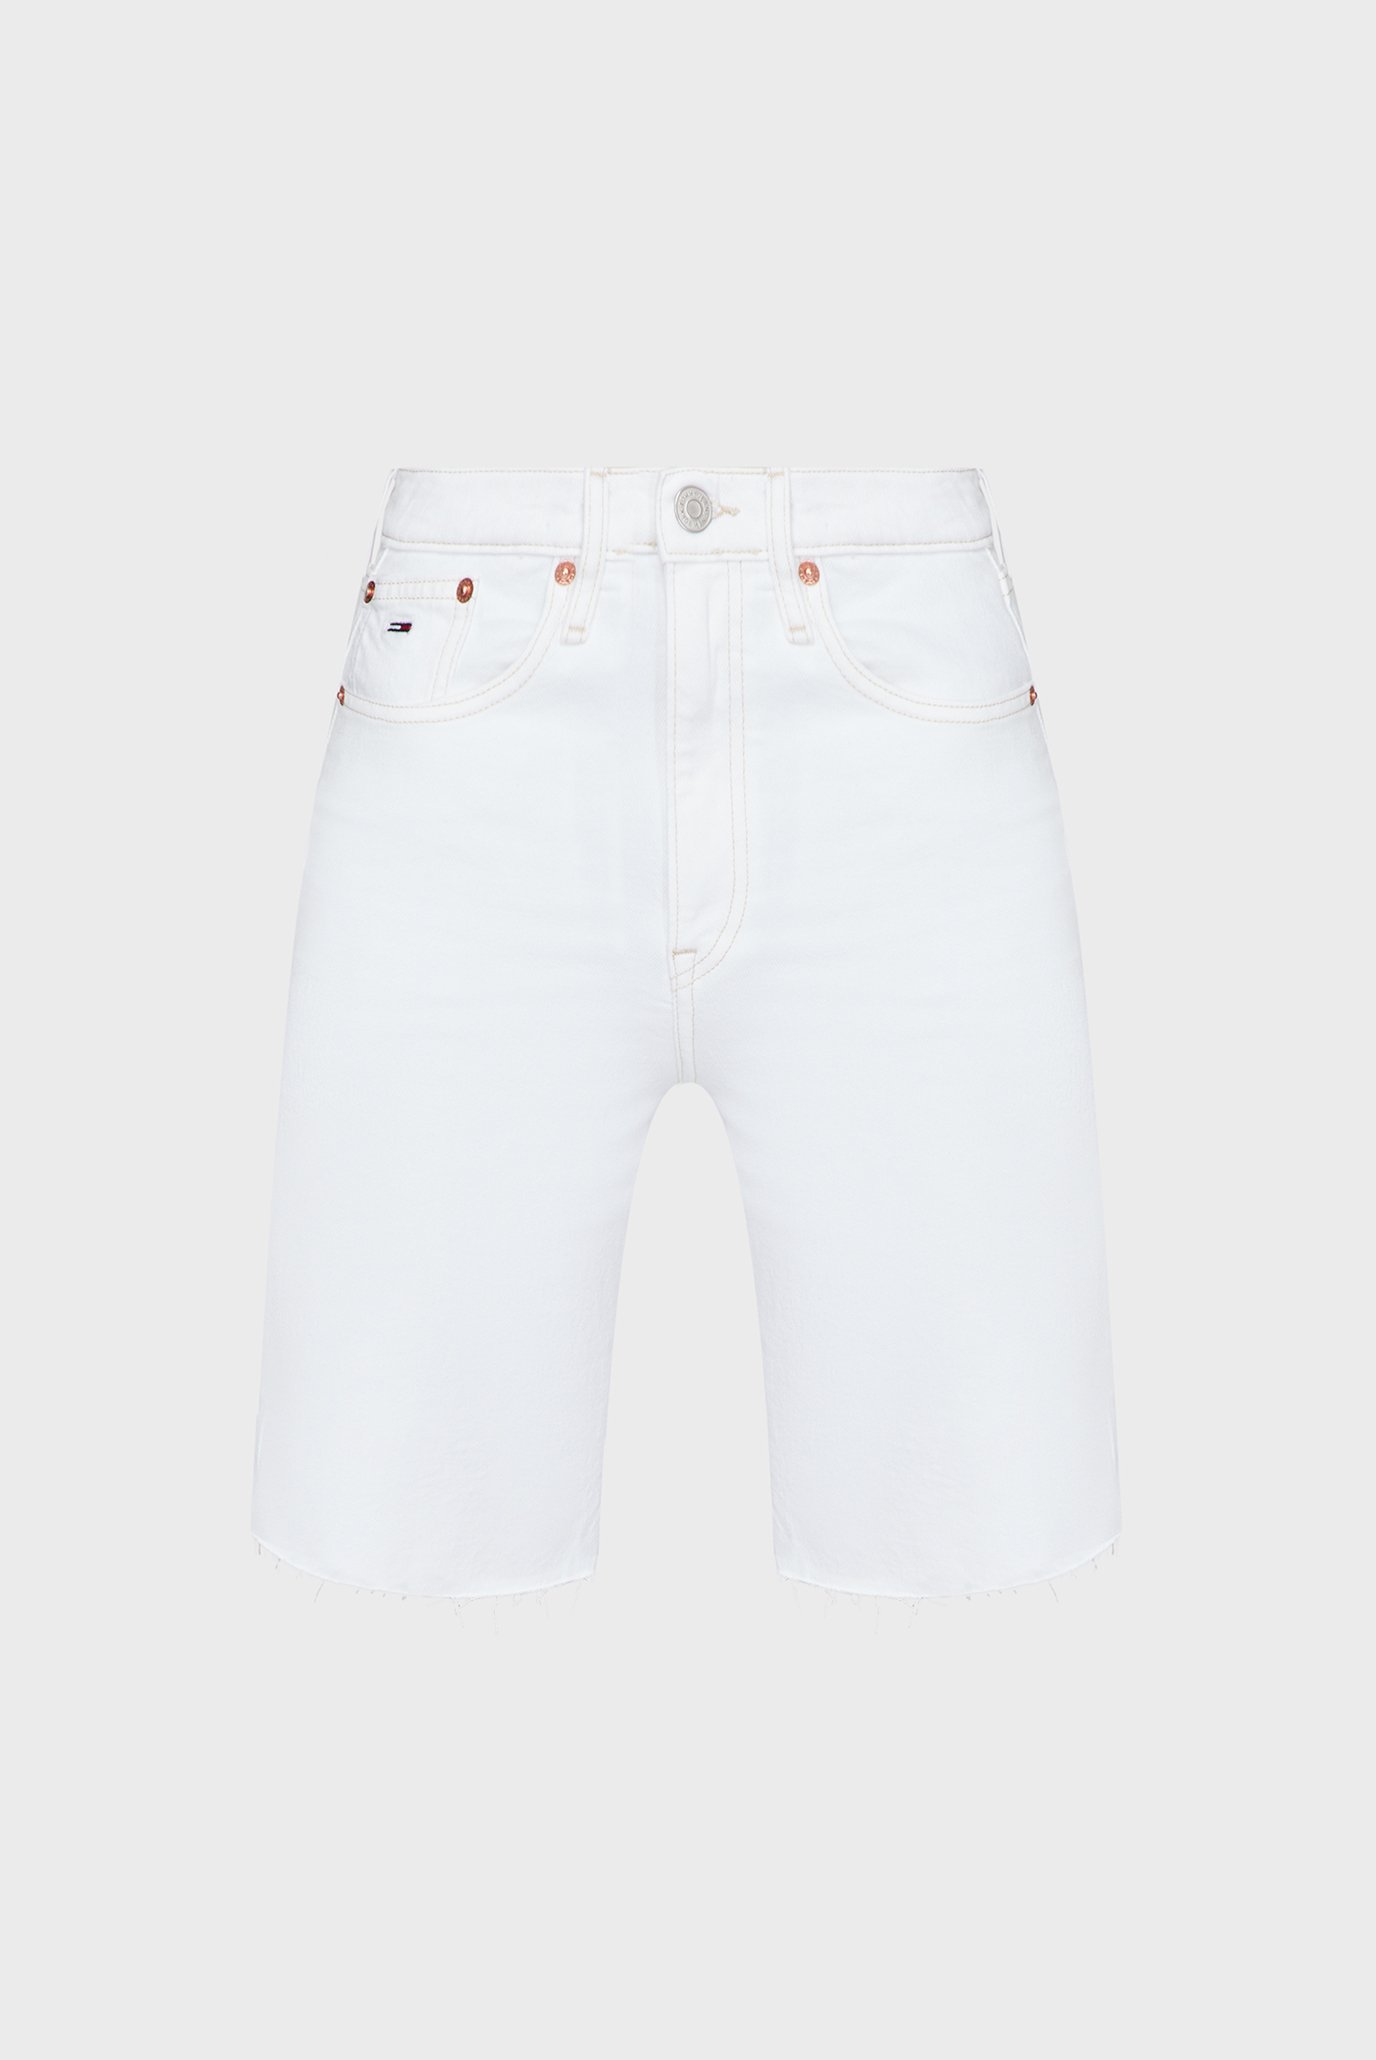 Жіночі білі джинсові шорти HARPER HR BERMUDA BG0196 1